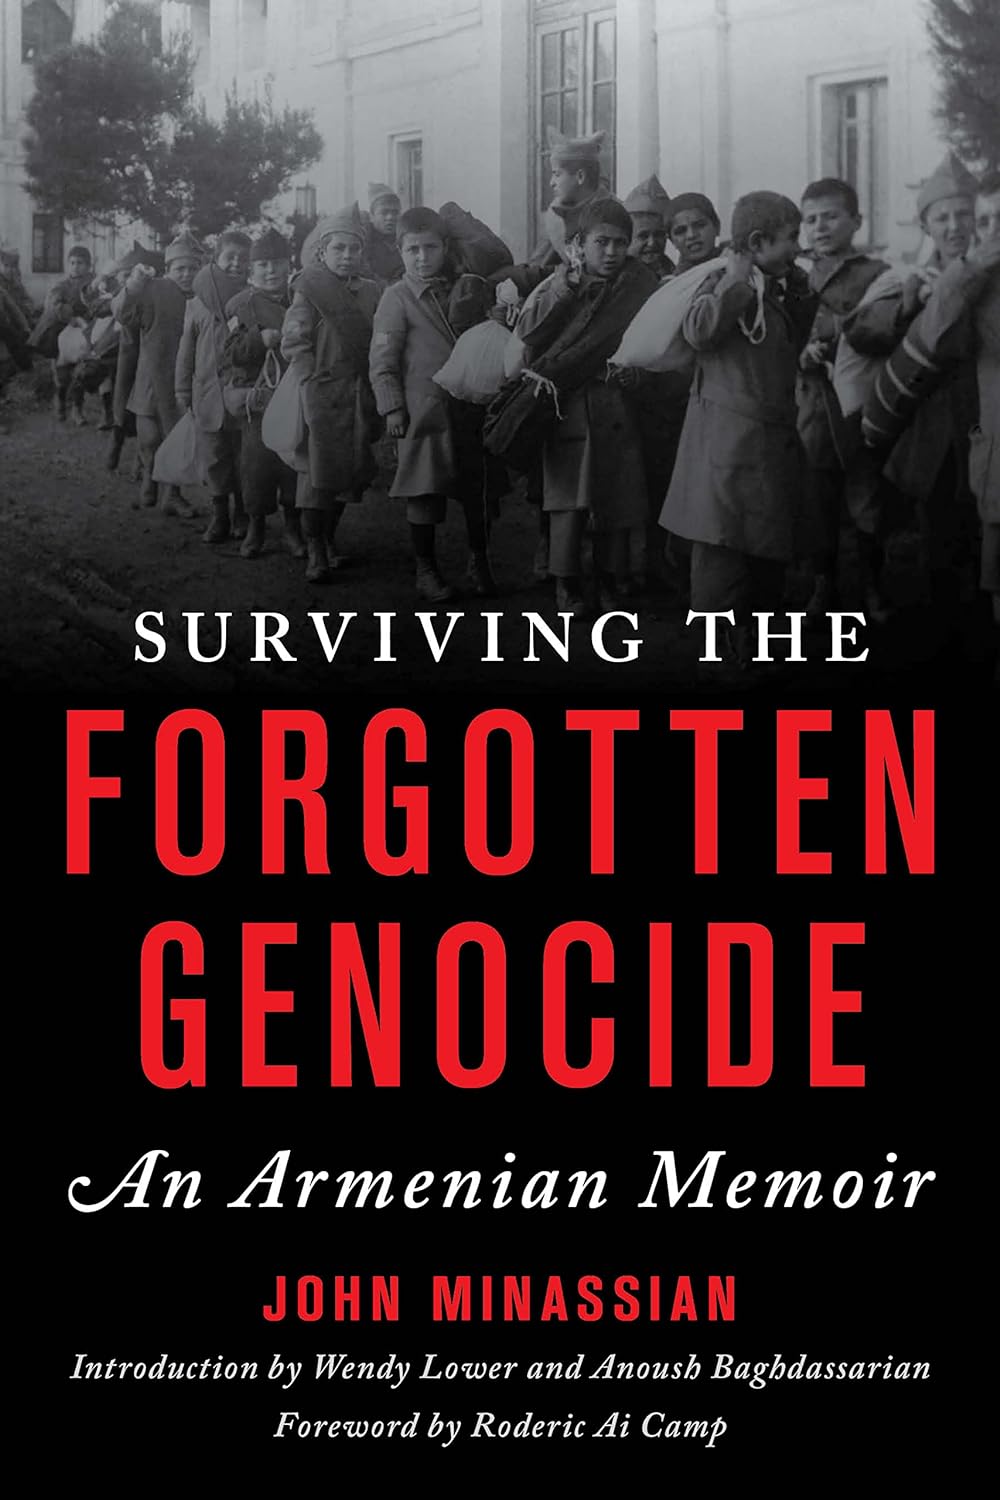 Surviving the Forgotten Genocide: An Armenian Memoir